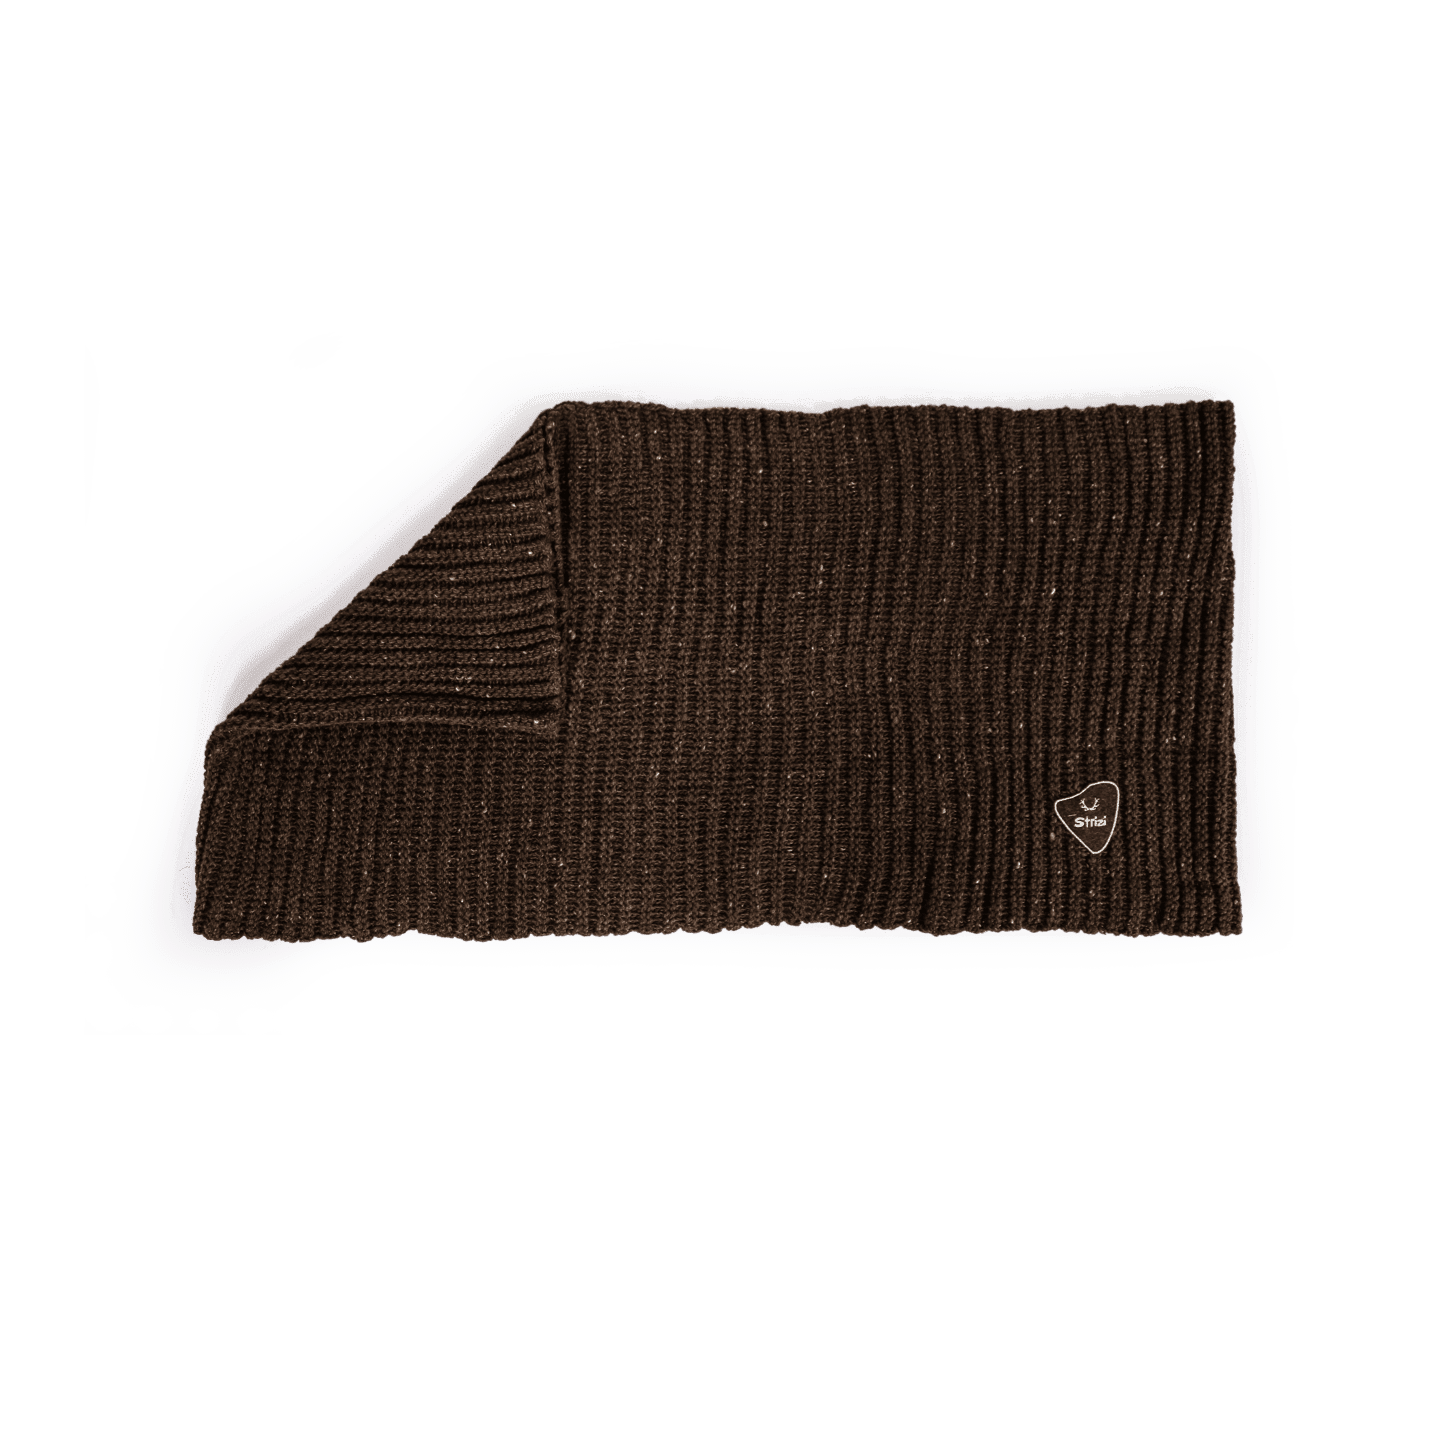 Strizi Erwachsenen Schal braun 2 - Strizi Loop scarf brown